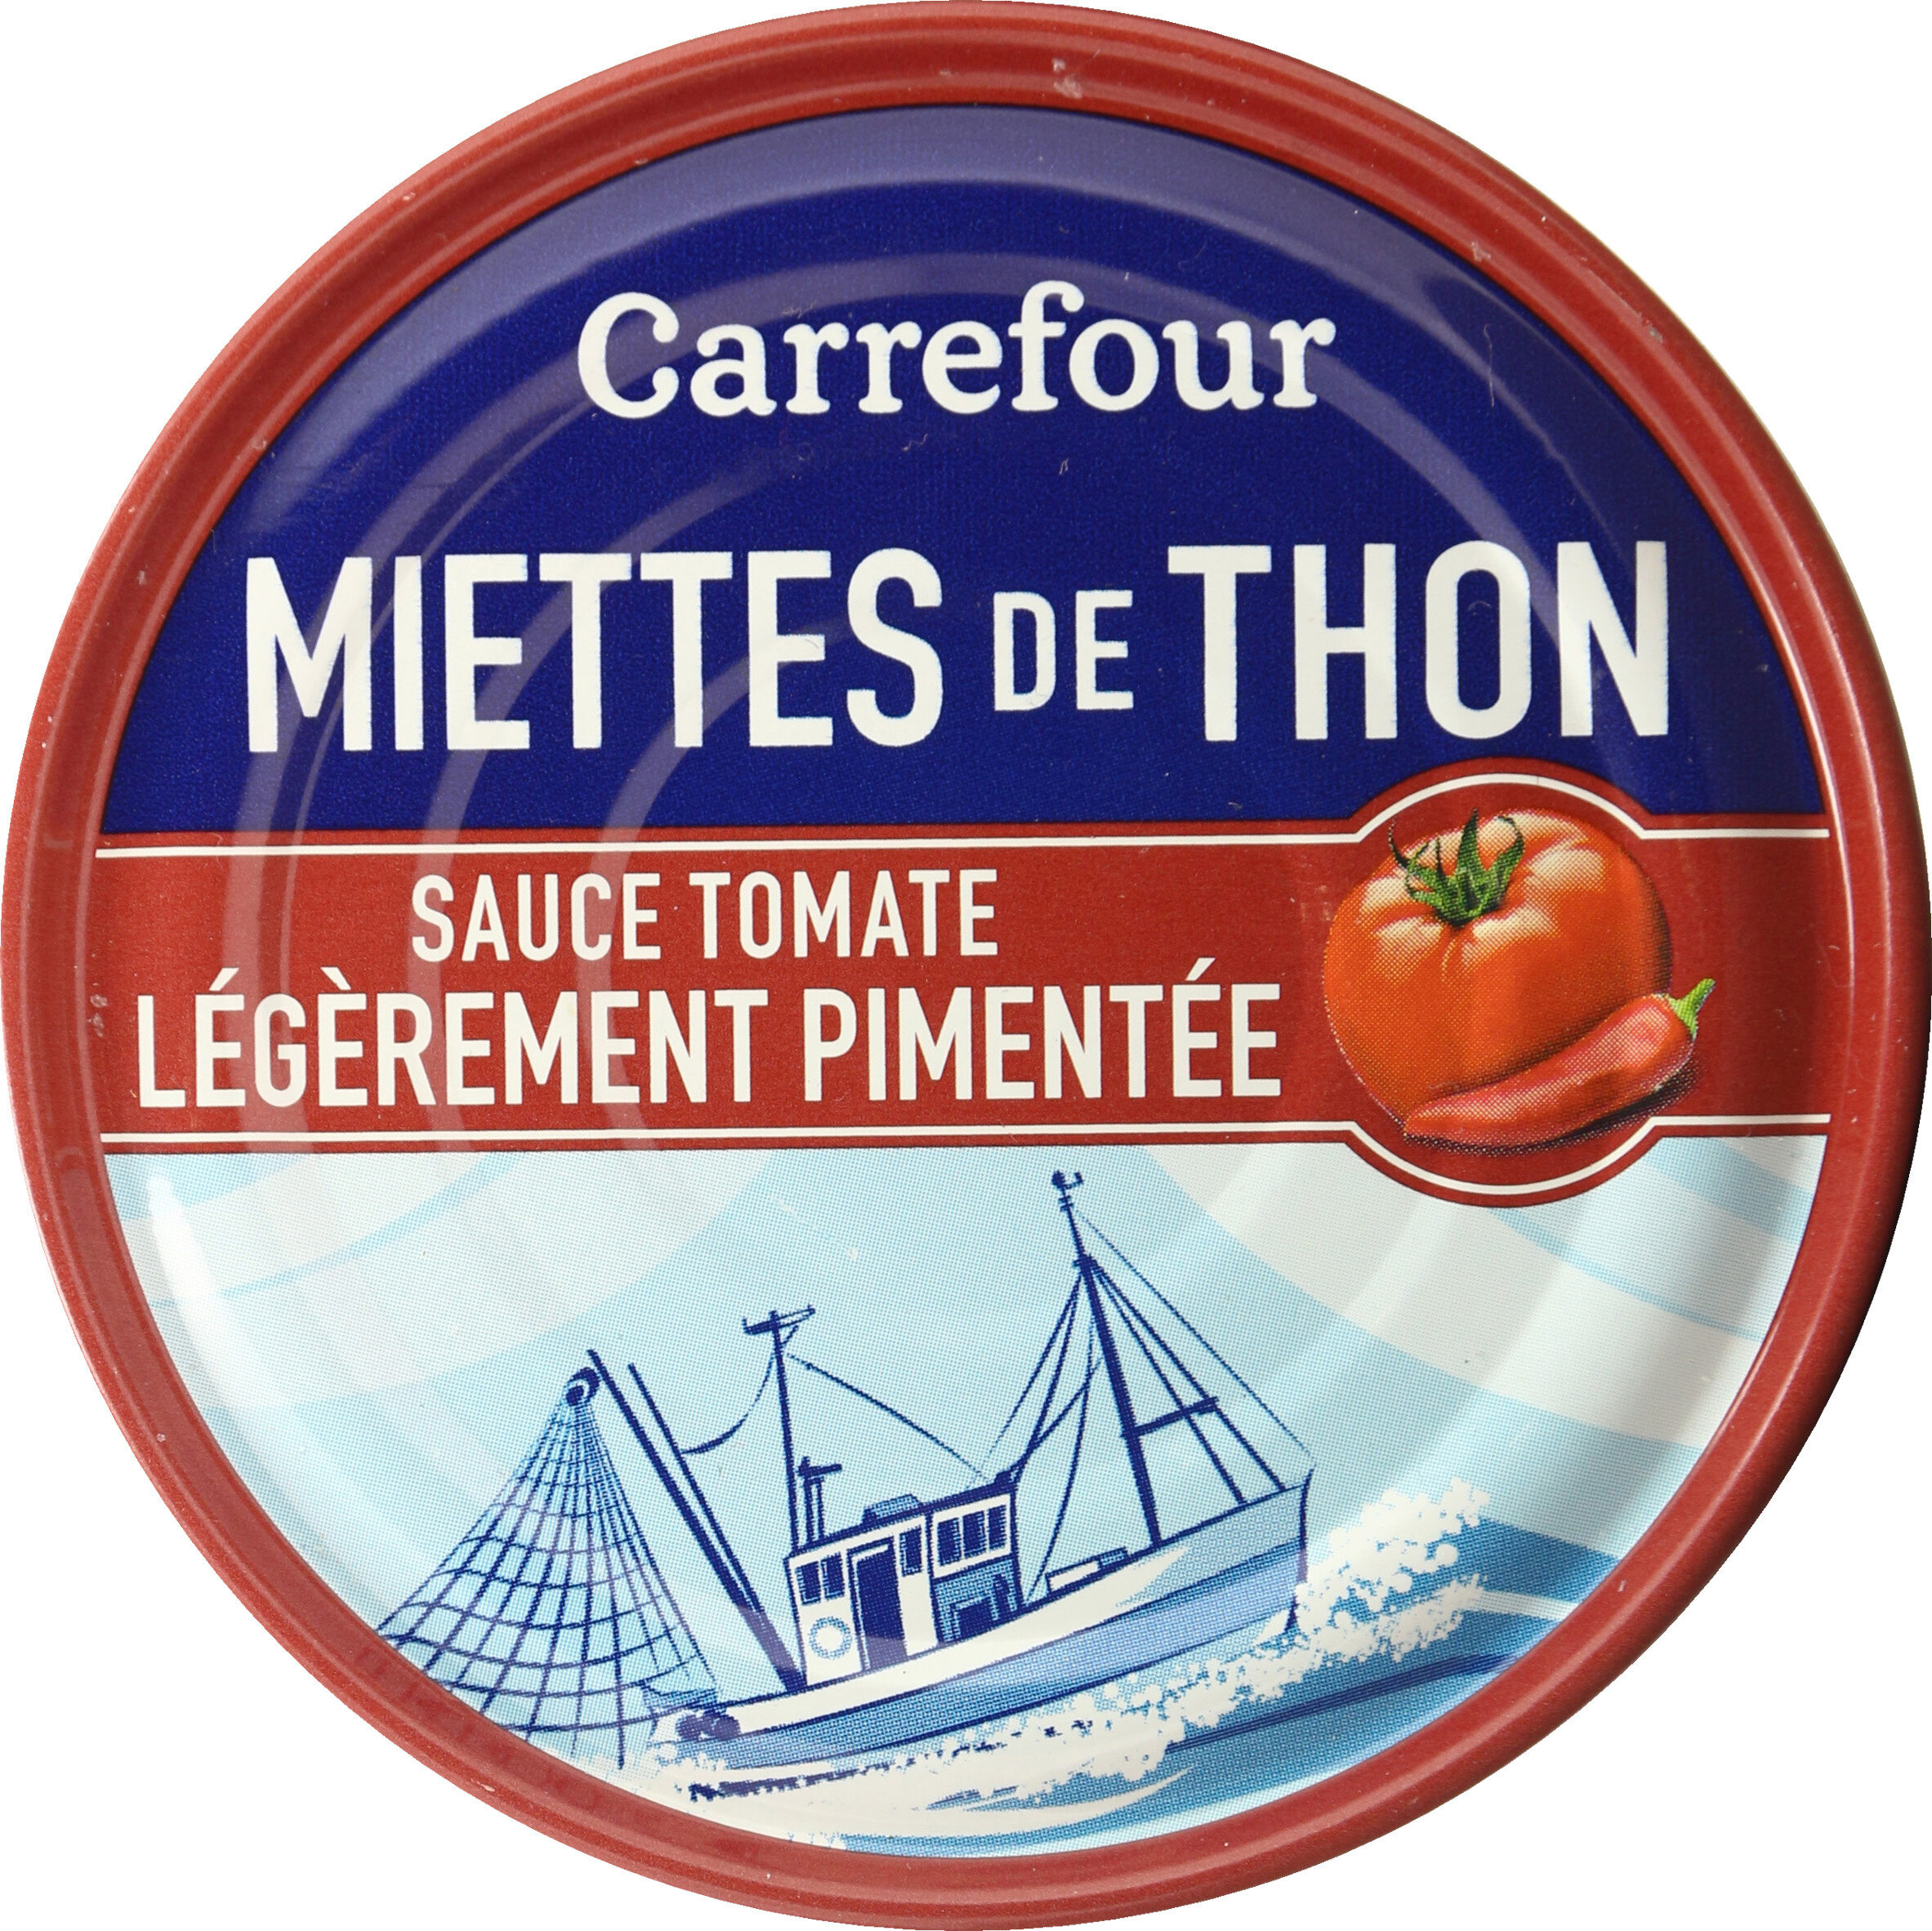 Miettes de thon sauce tomate légèrement pimentée - Producto - fr